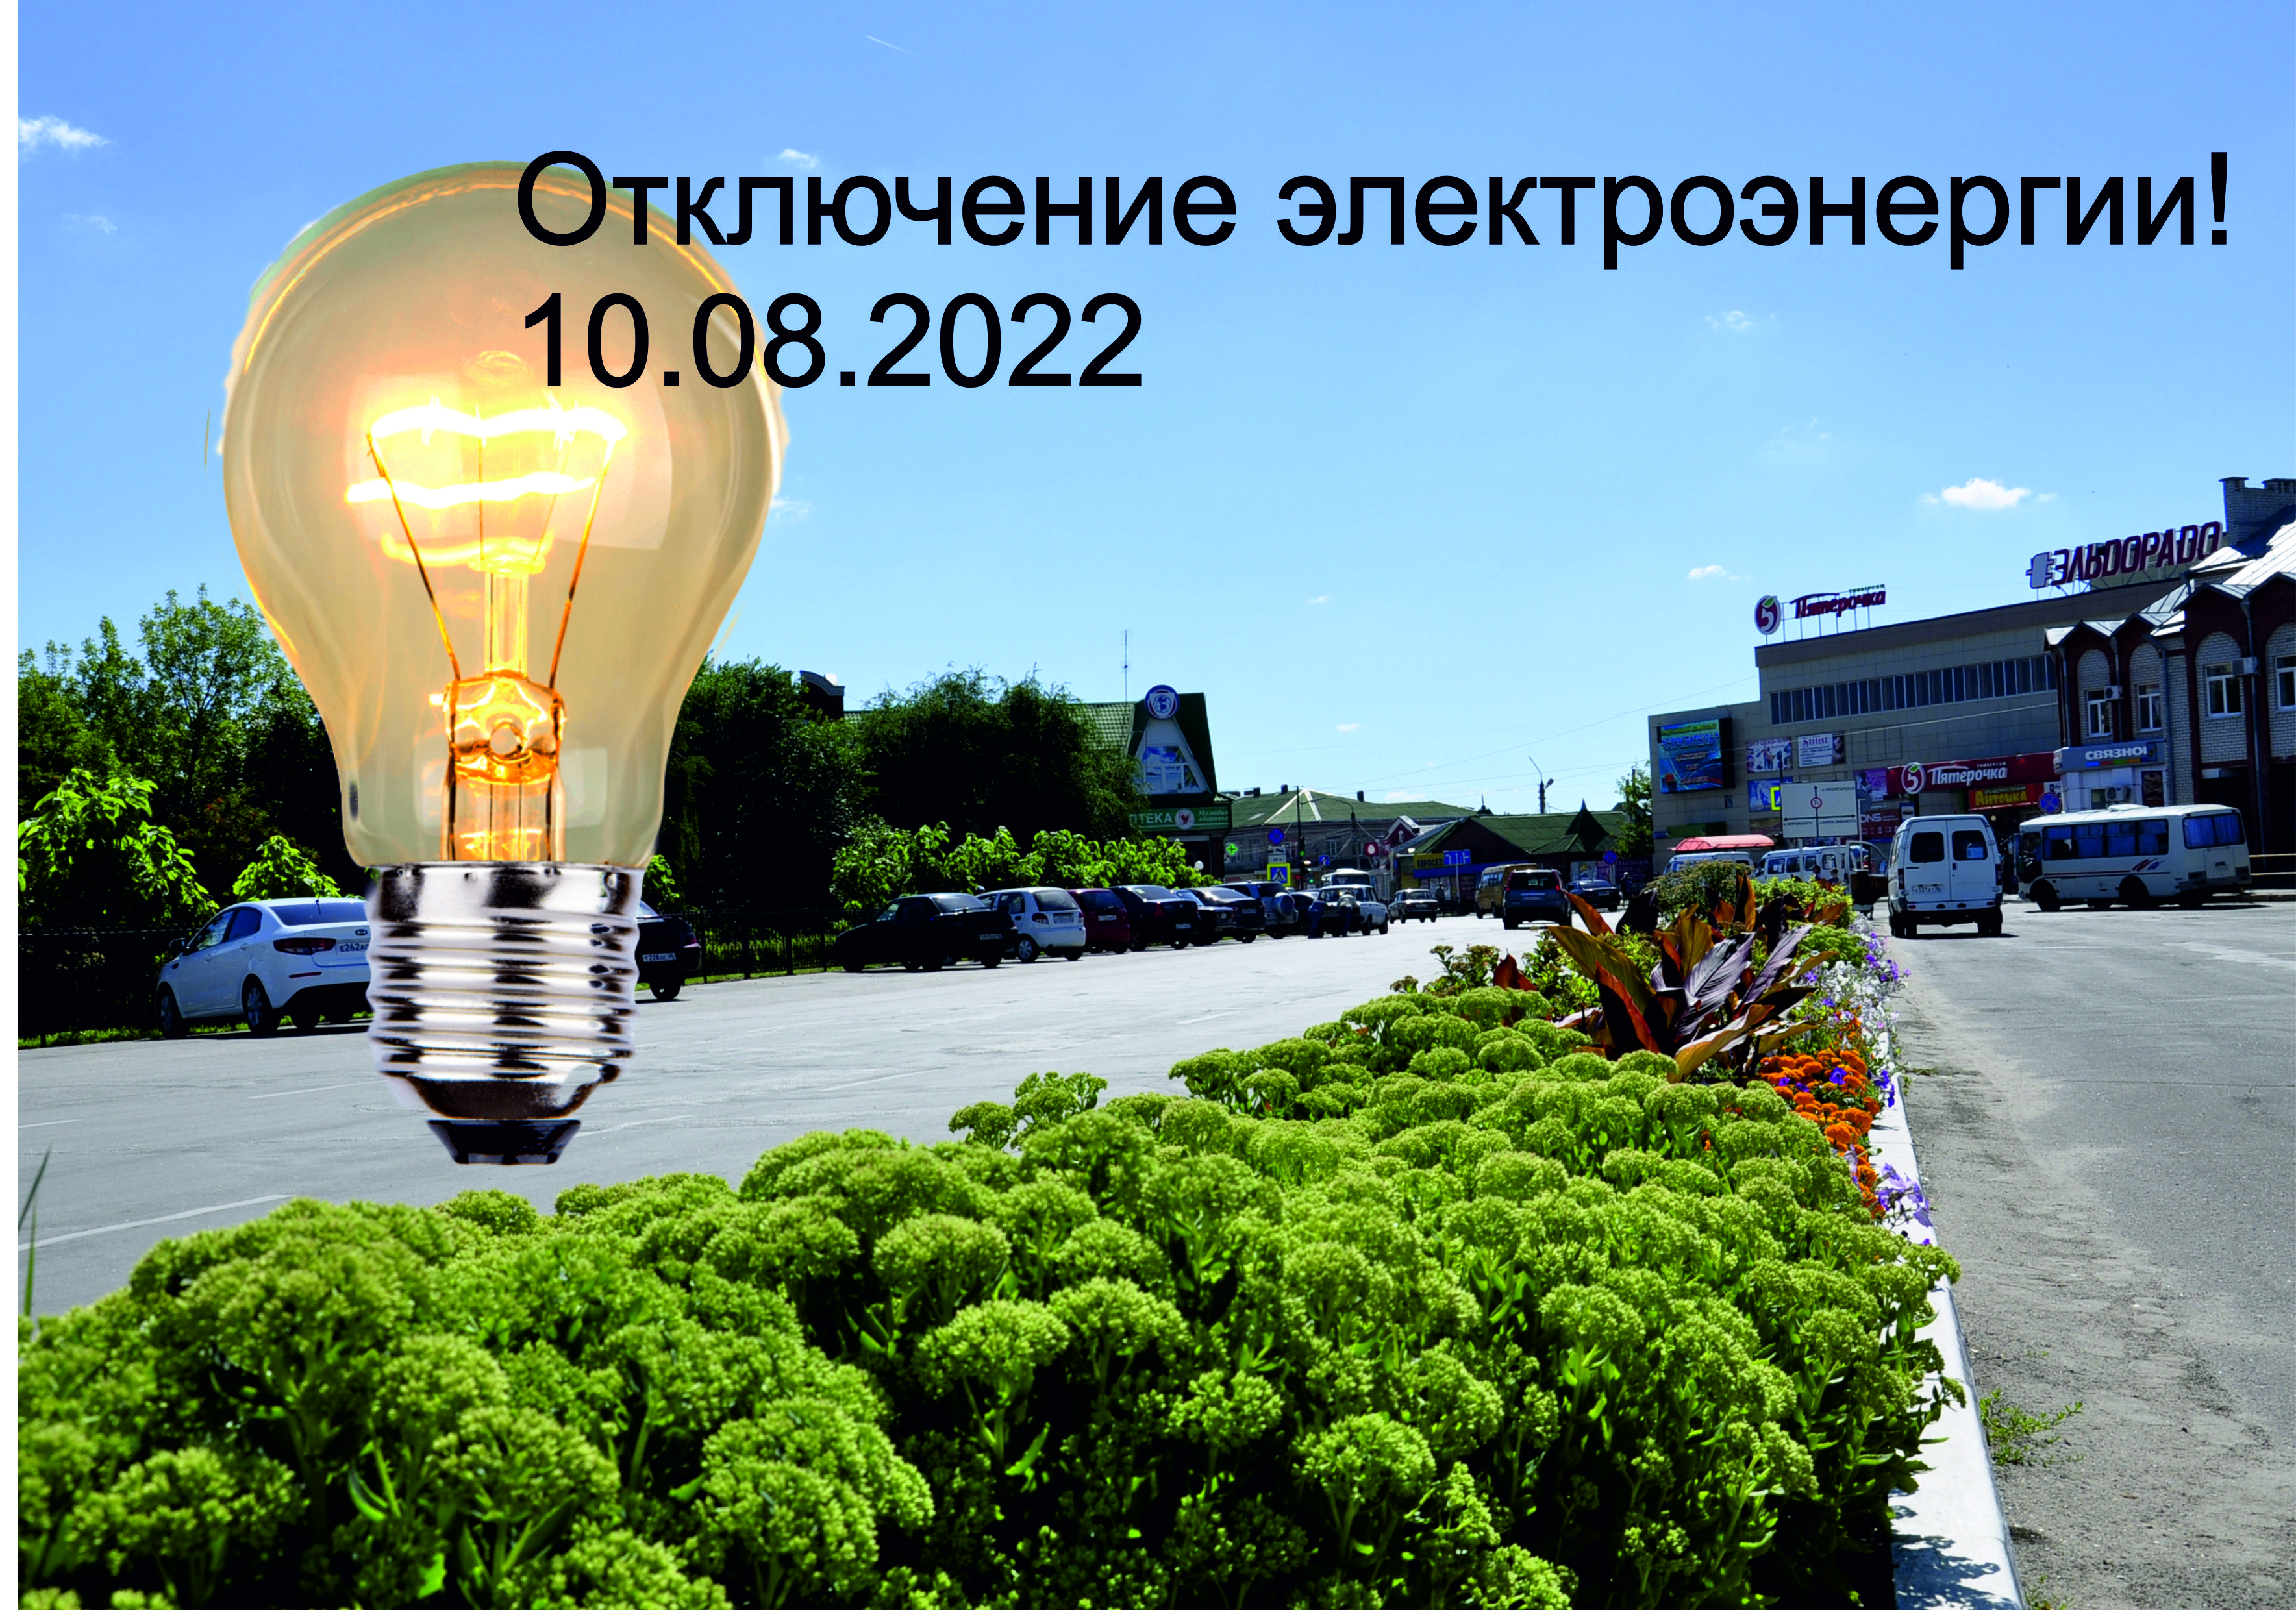 Администрация МУП г.Россошь “Городские электрические сети доводит до сведения заинтересованных лиц,что будет прекращена подача электроэнергии 10.08.2022г.